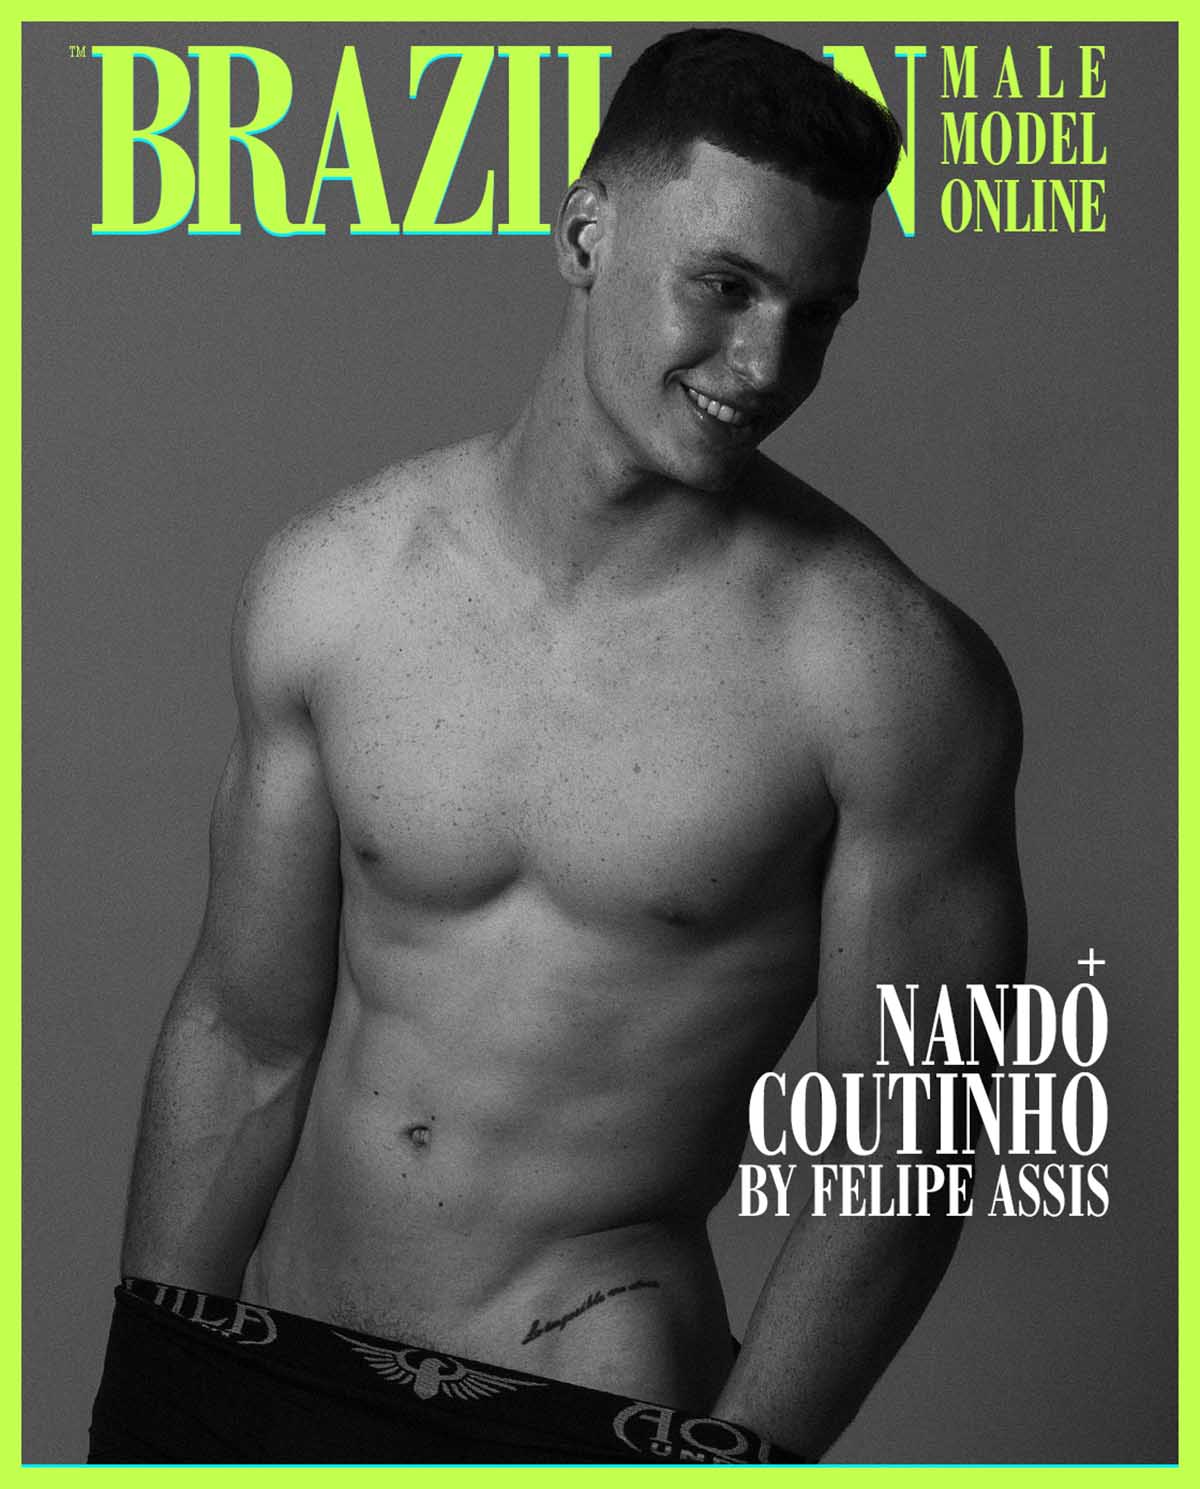 Nando Coutinho by Felipe Assis